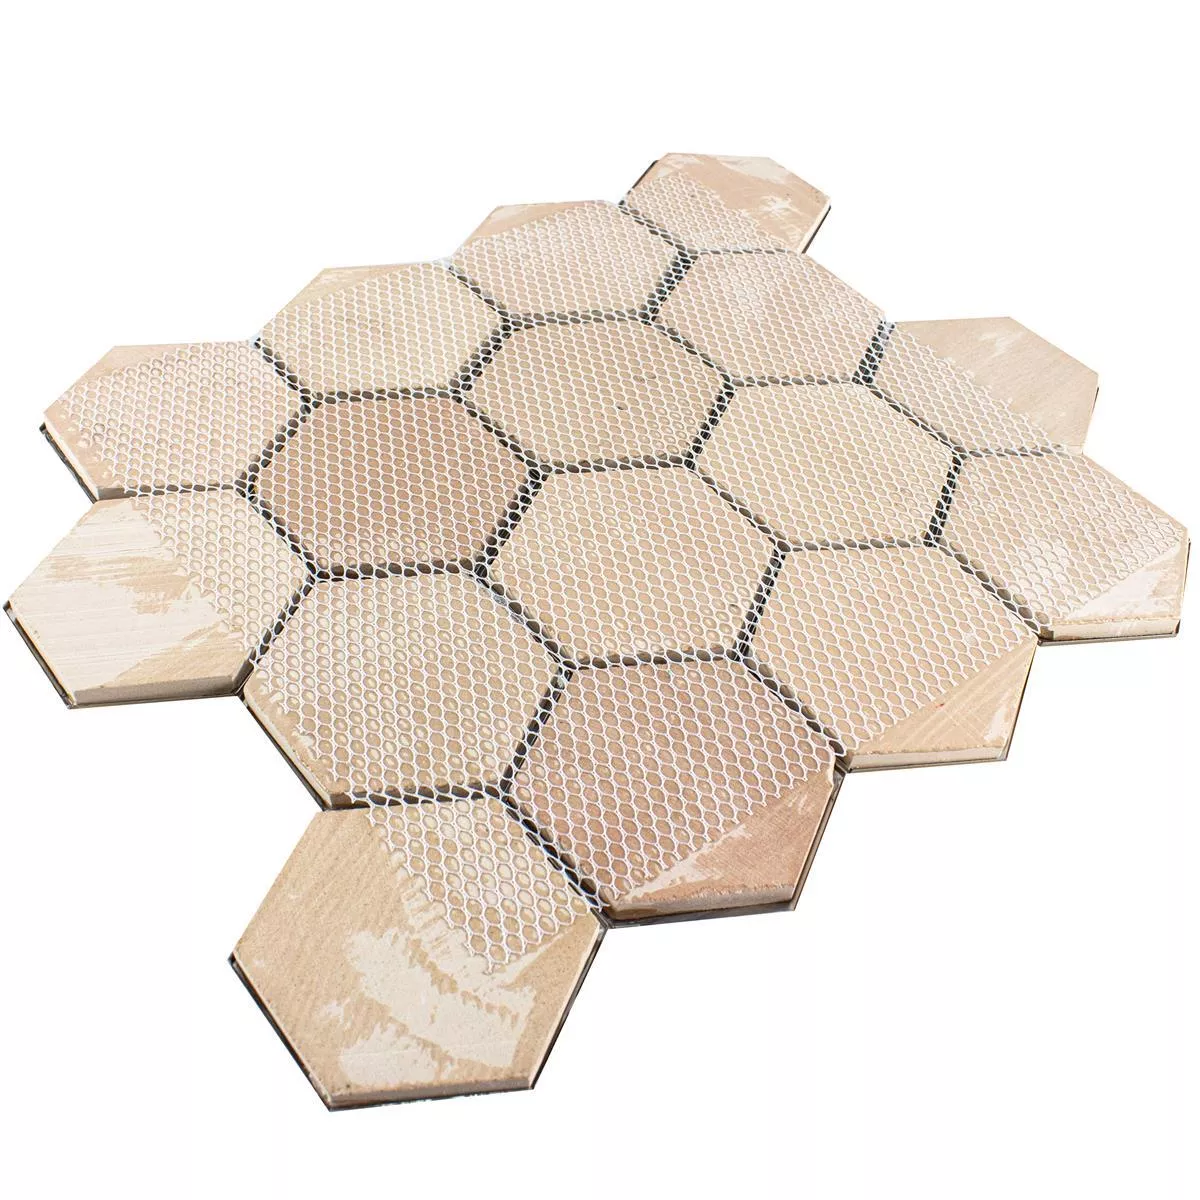 Rostfritt Stål Mosaik Durango Hexagon 3D Brun